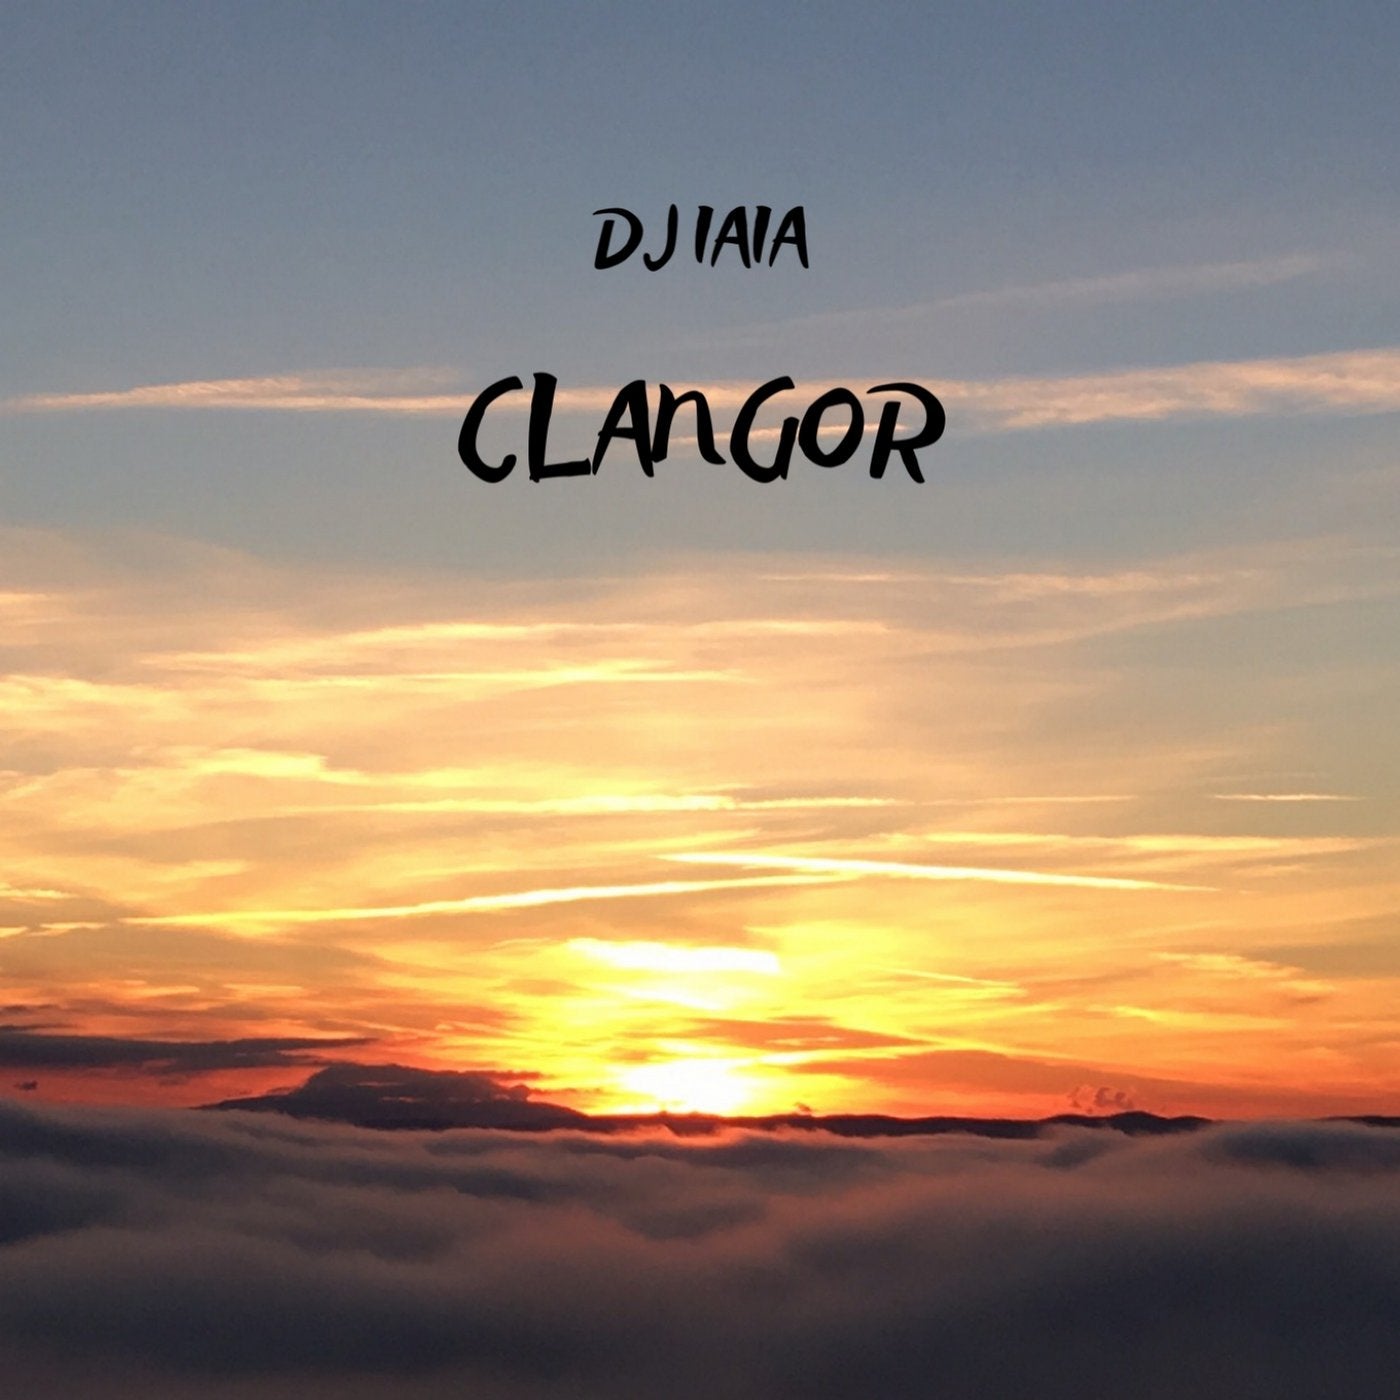 Clangor